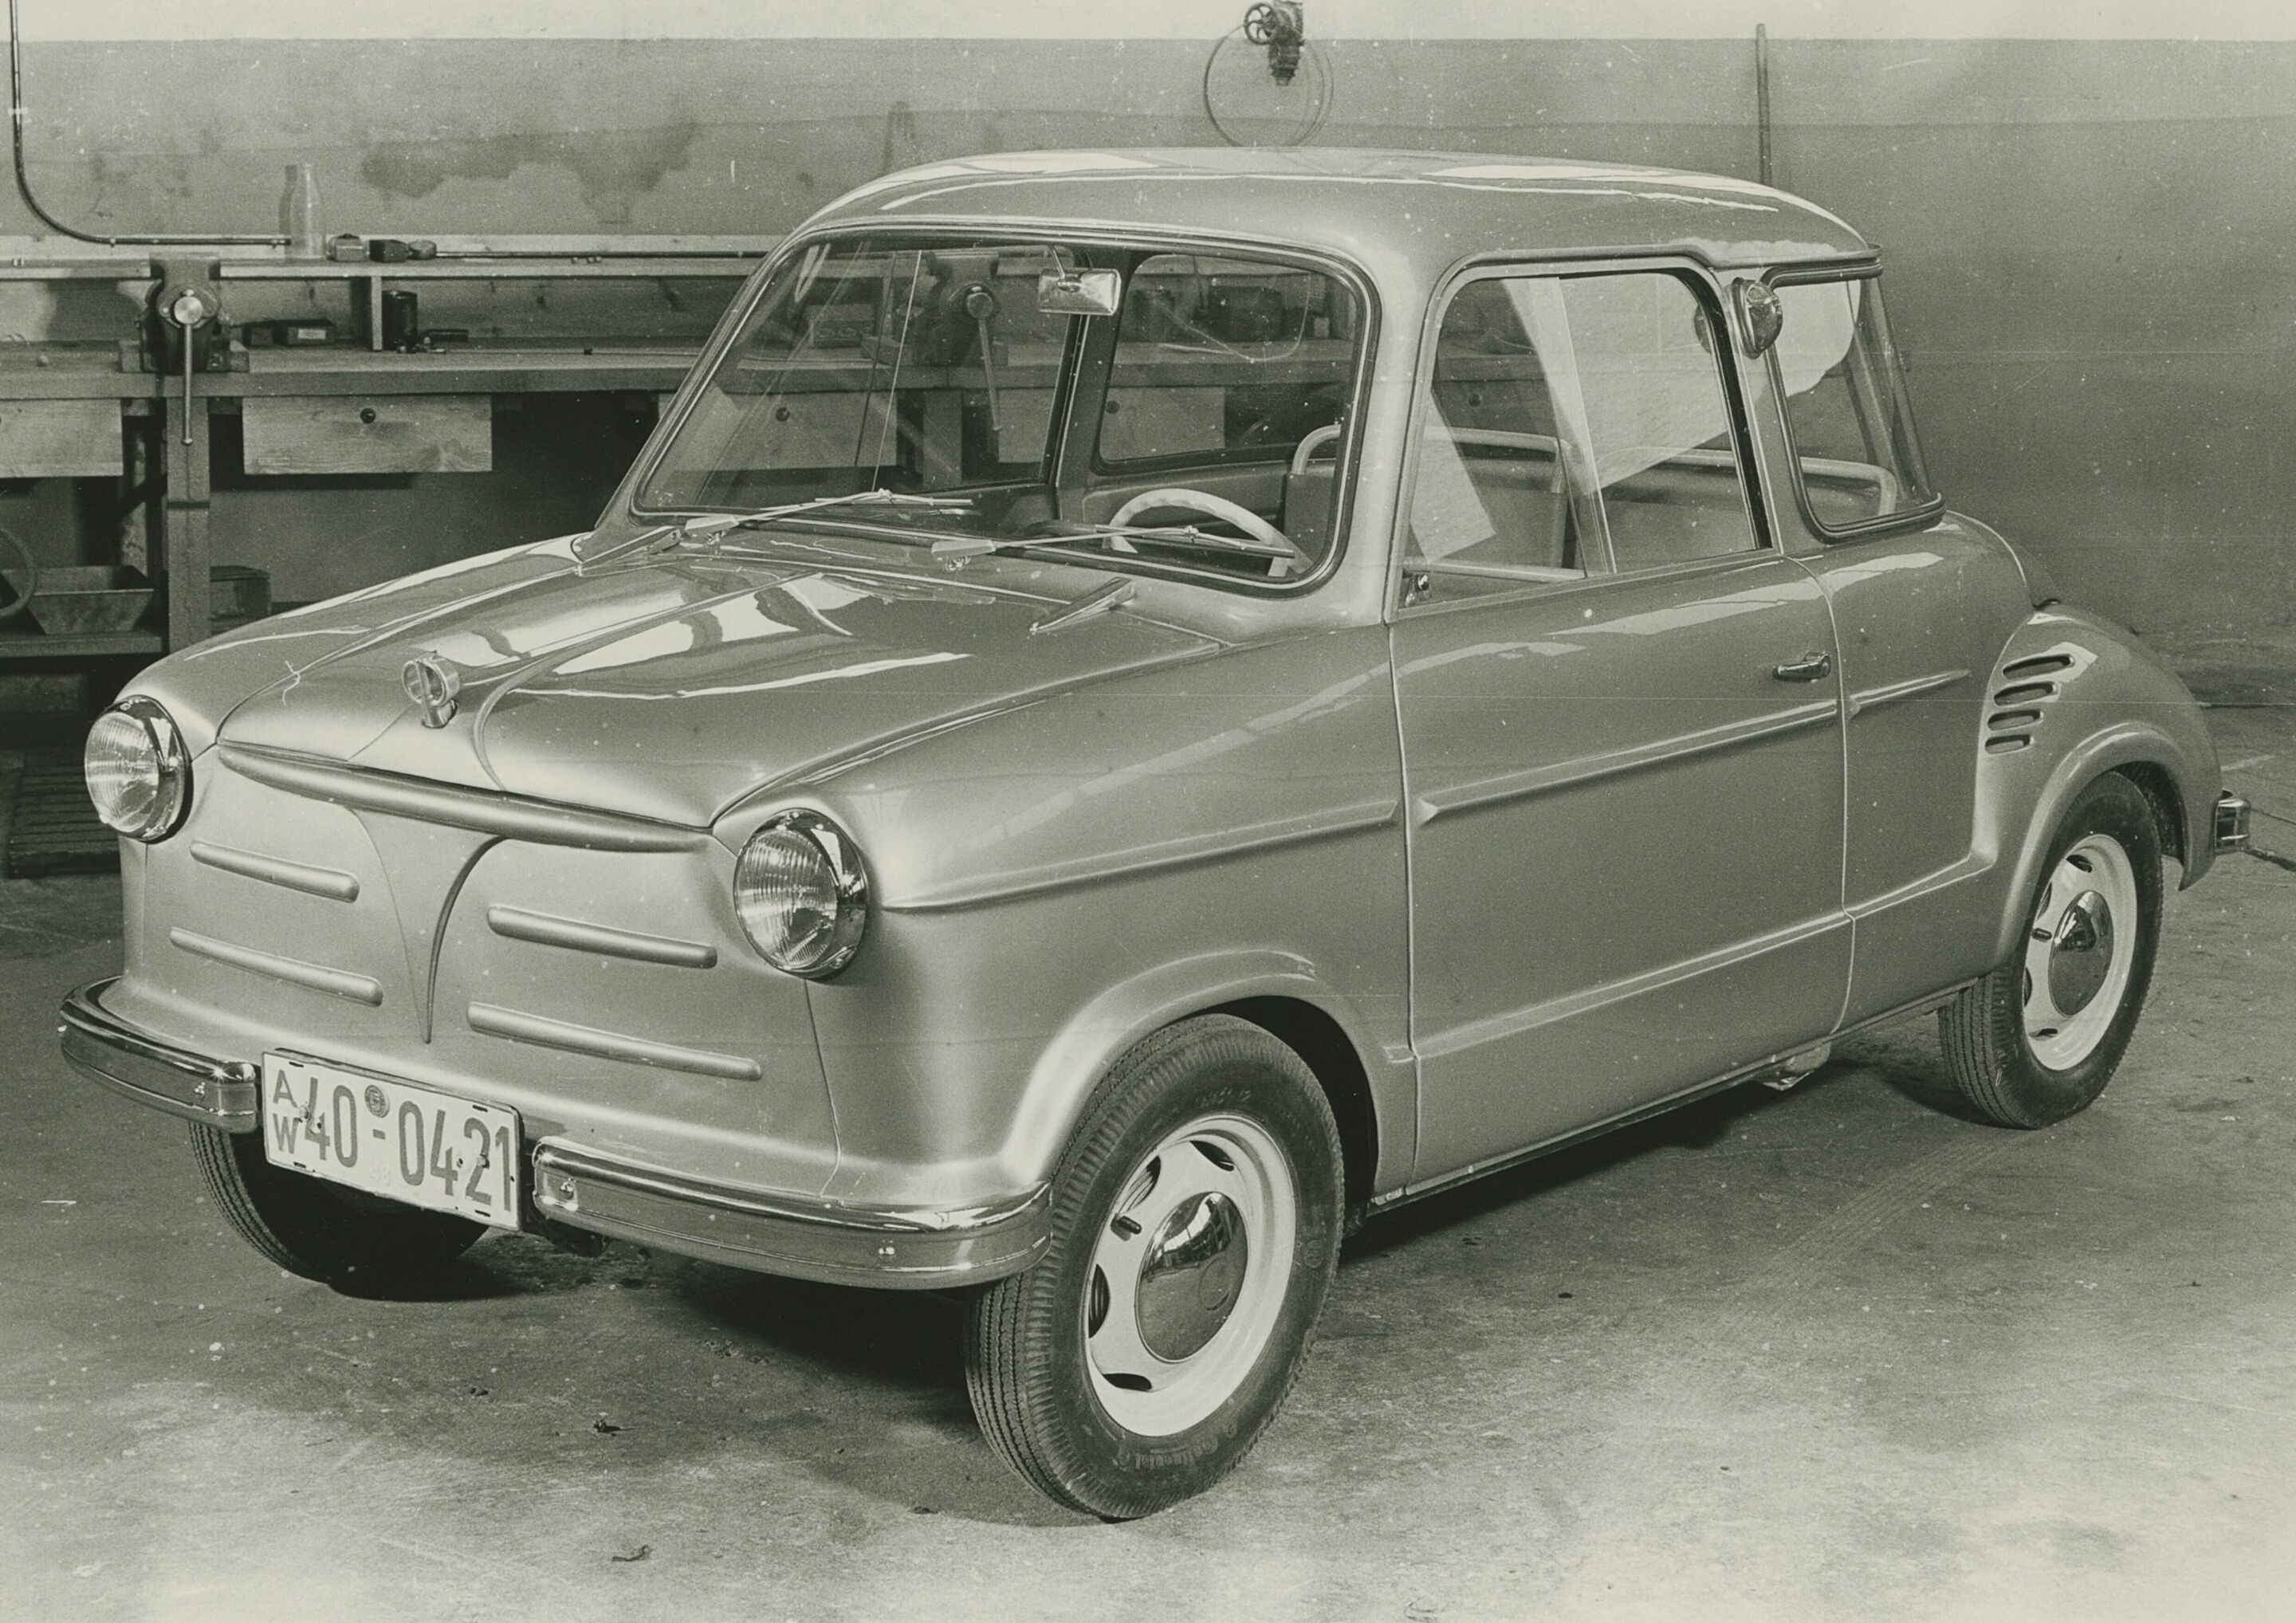 An NSU Prinz prototype from 1956